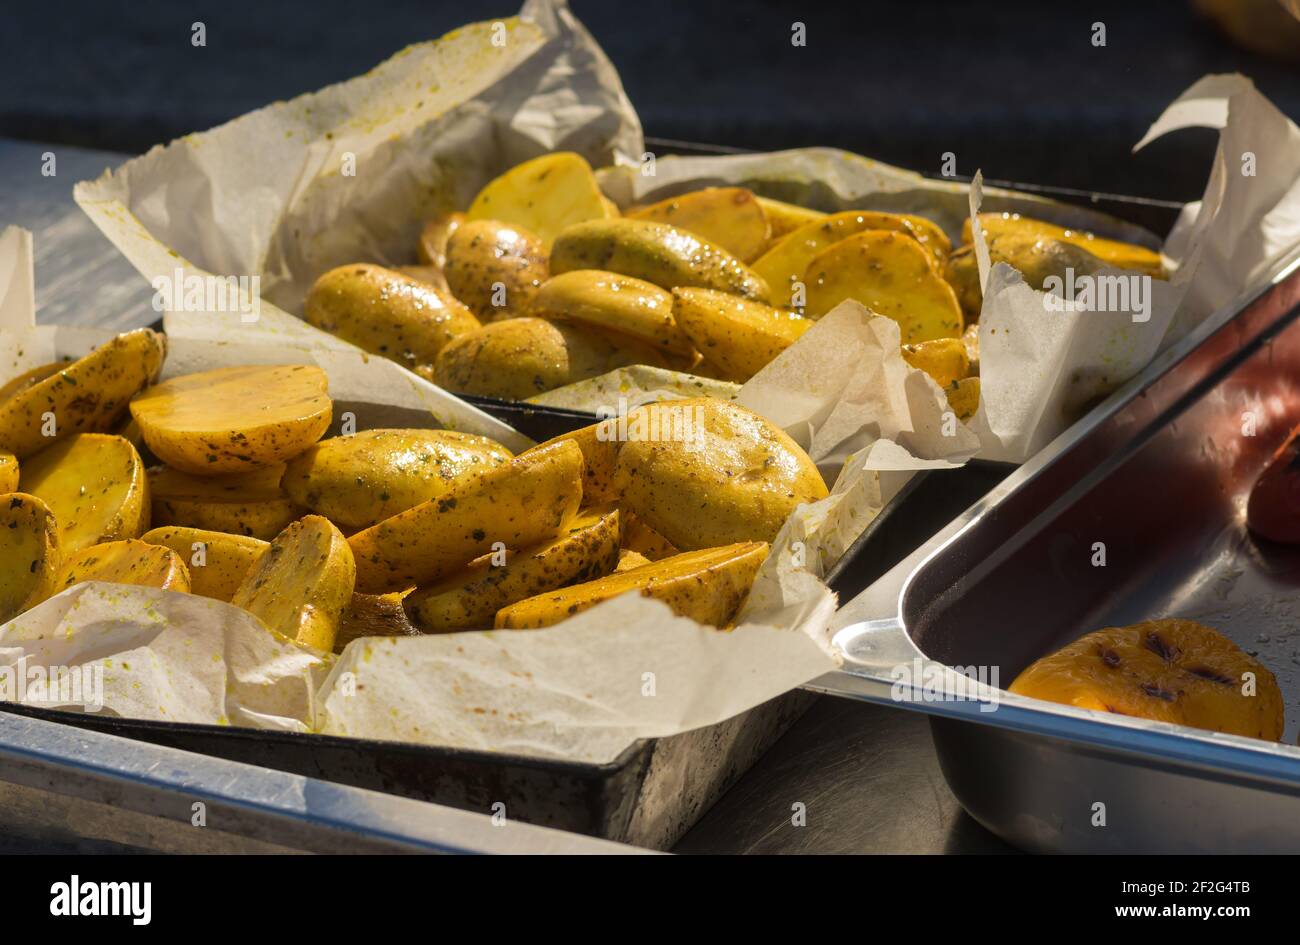 Street Food in der Ukraine - gegrillte Kartoffeln liegen auf einem Metalltablett in Pergamentpapier und bereit zu sein Serviert Stockfoto